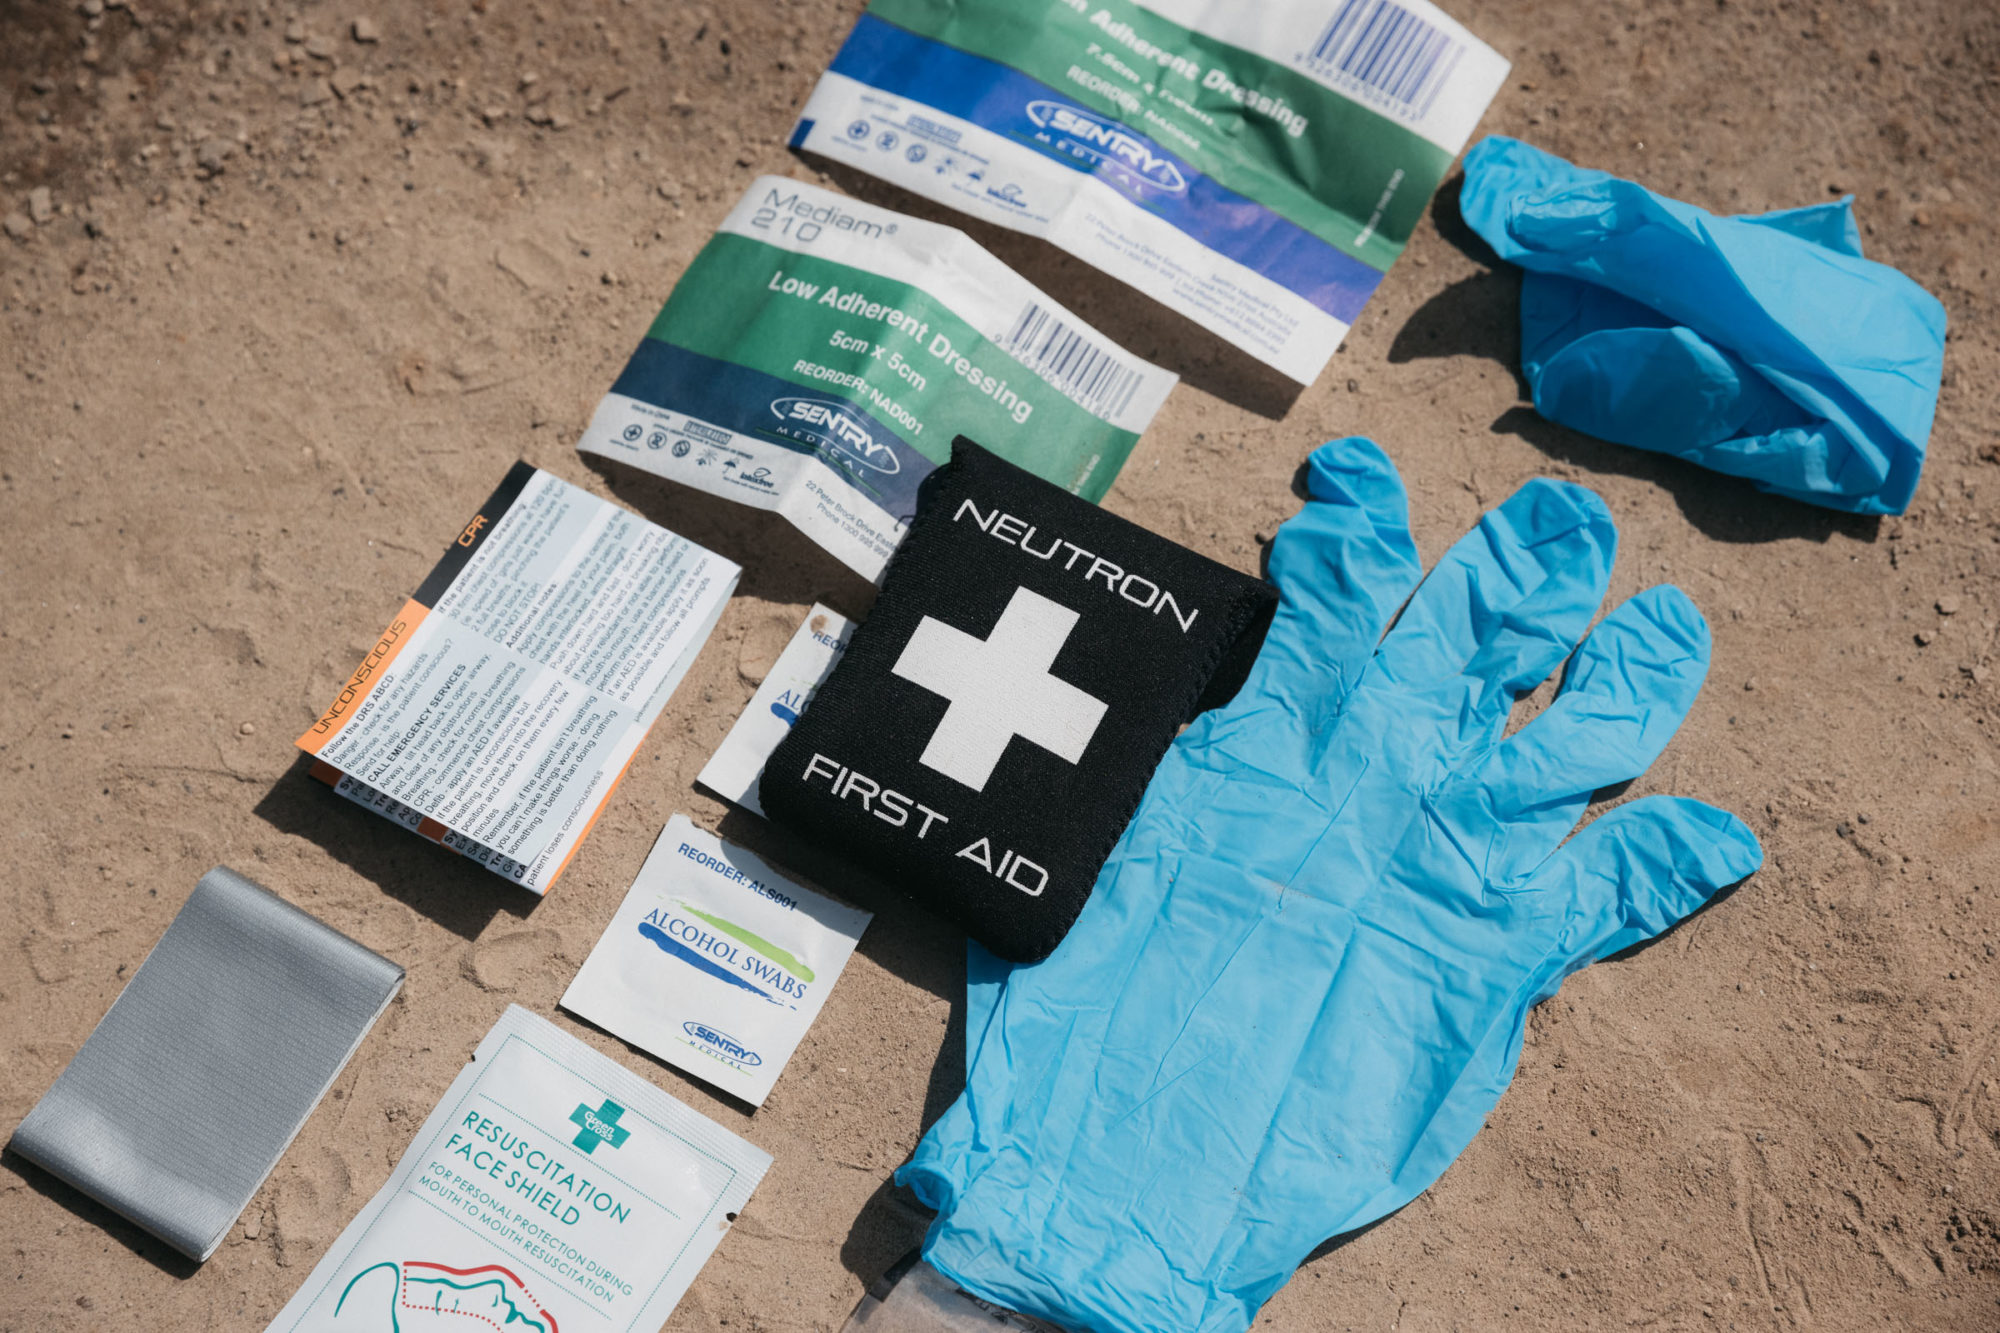 Neutron First Aid Kit